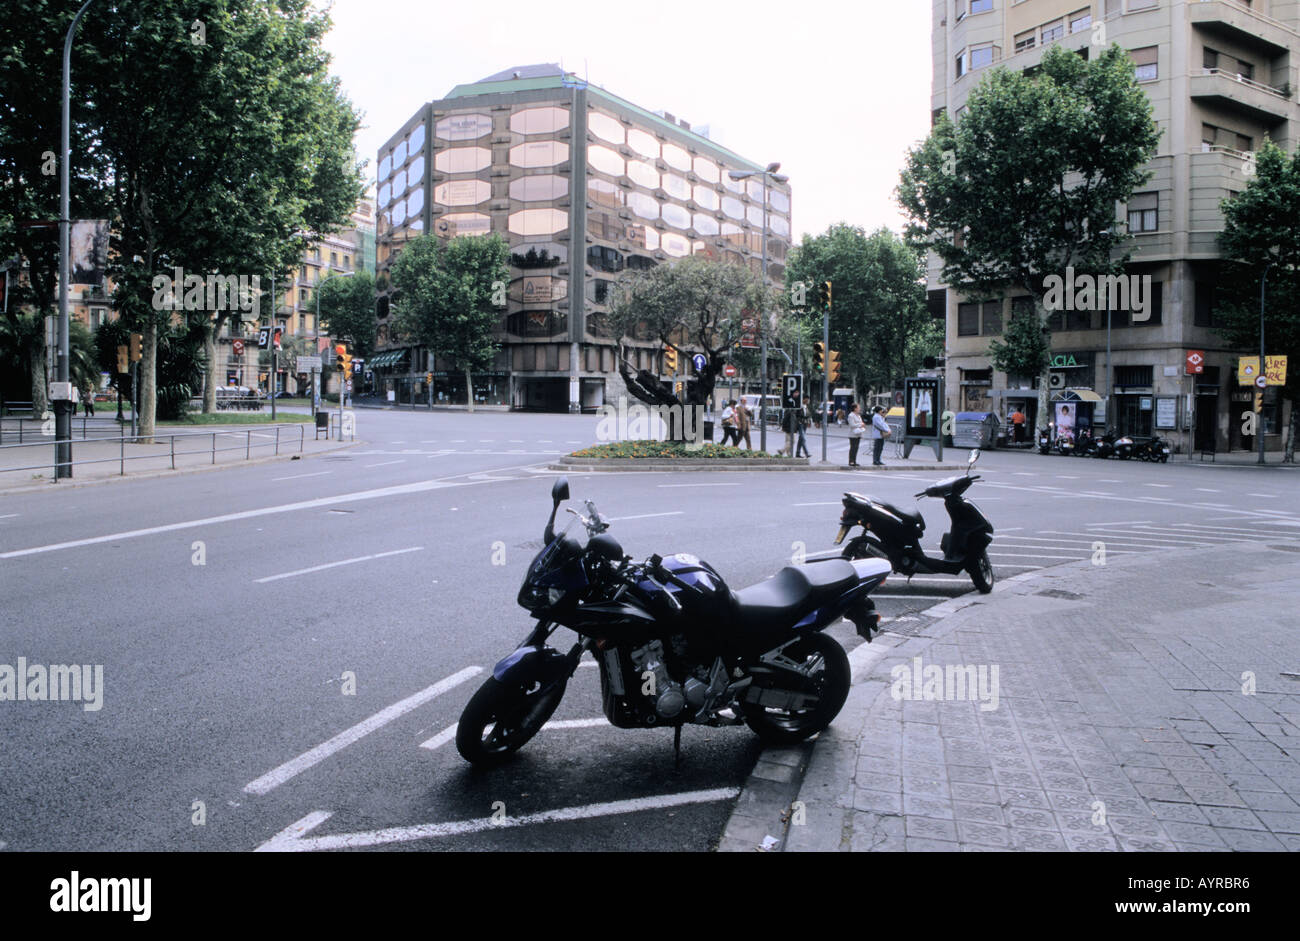 City centre scene in Barcelona Catalonia Spain Stock Photo